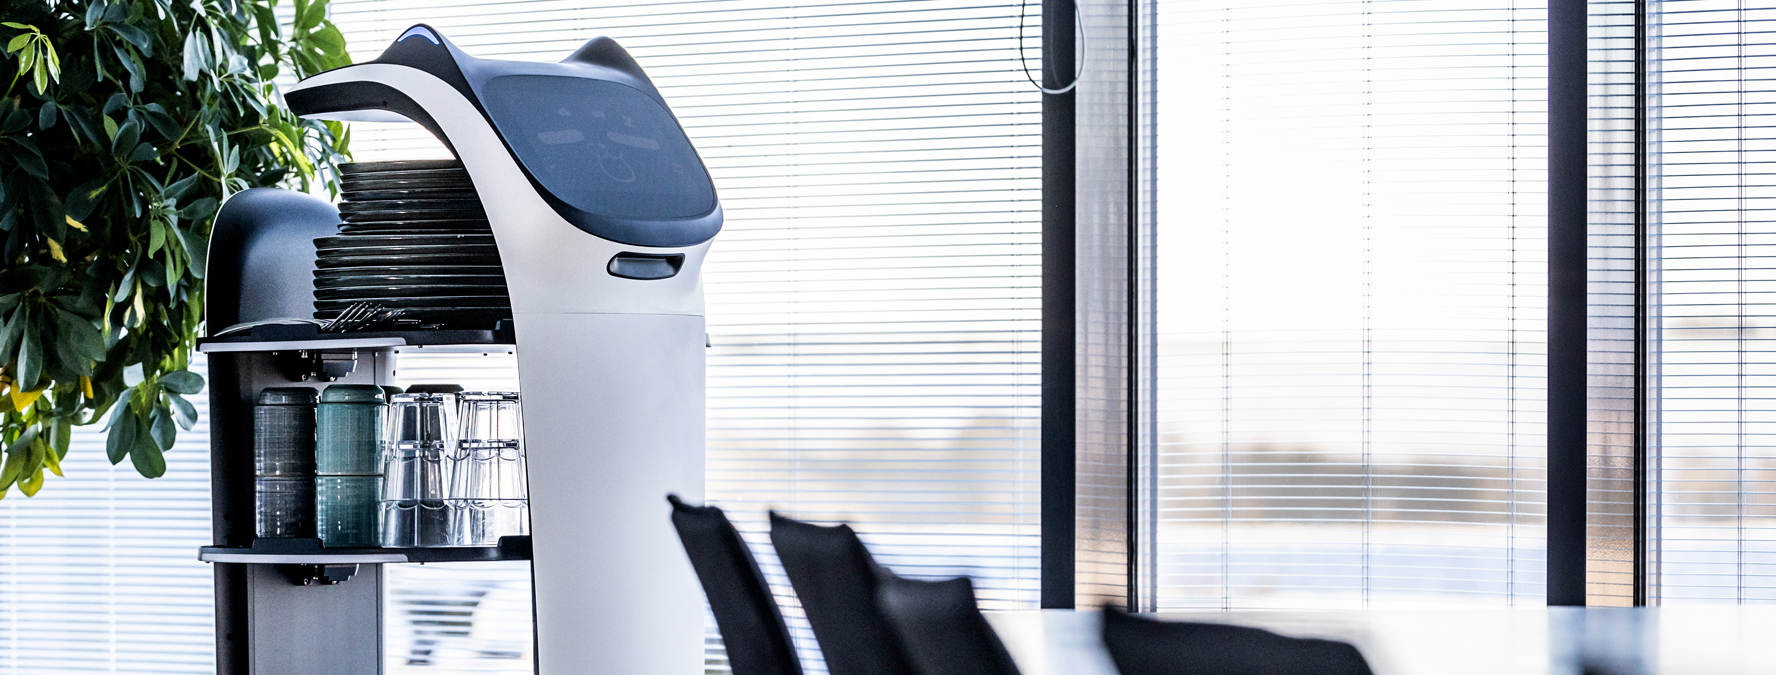 BellaBot serveringrobot med service i mødelokale